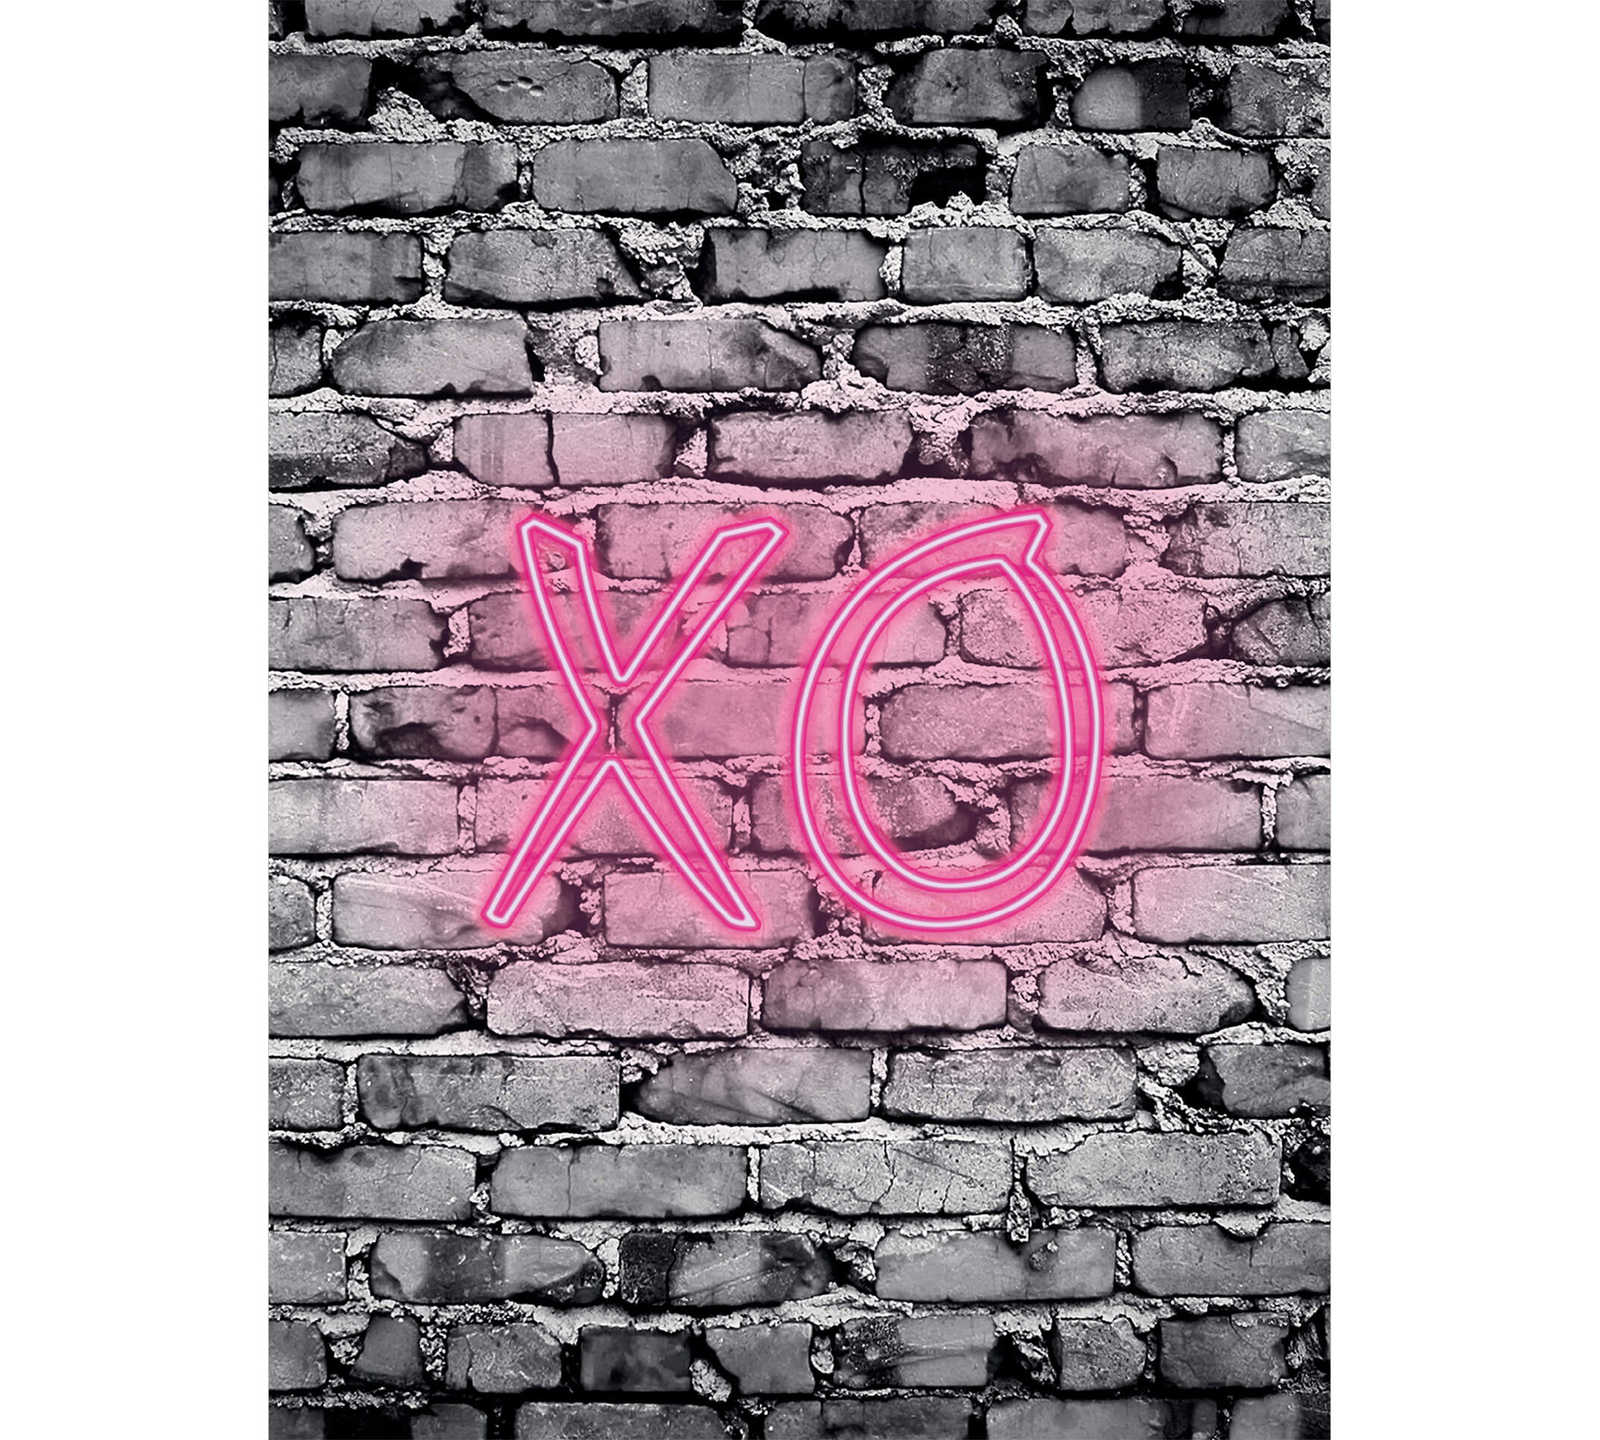         narrow mural illuminated letters XO on stone wall
    